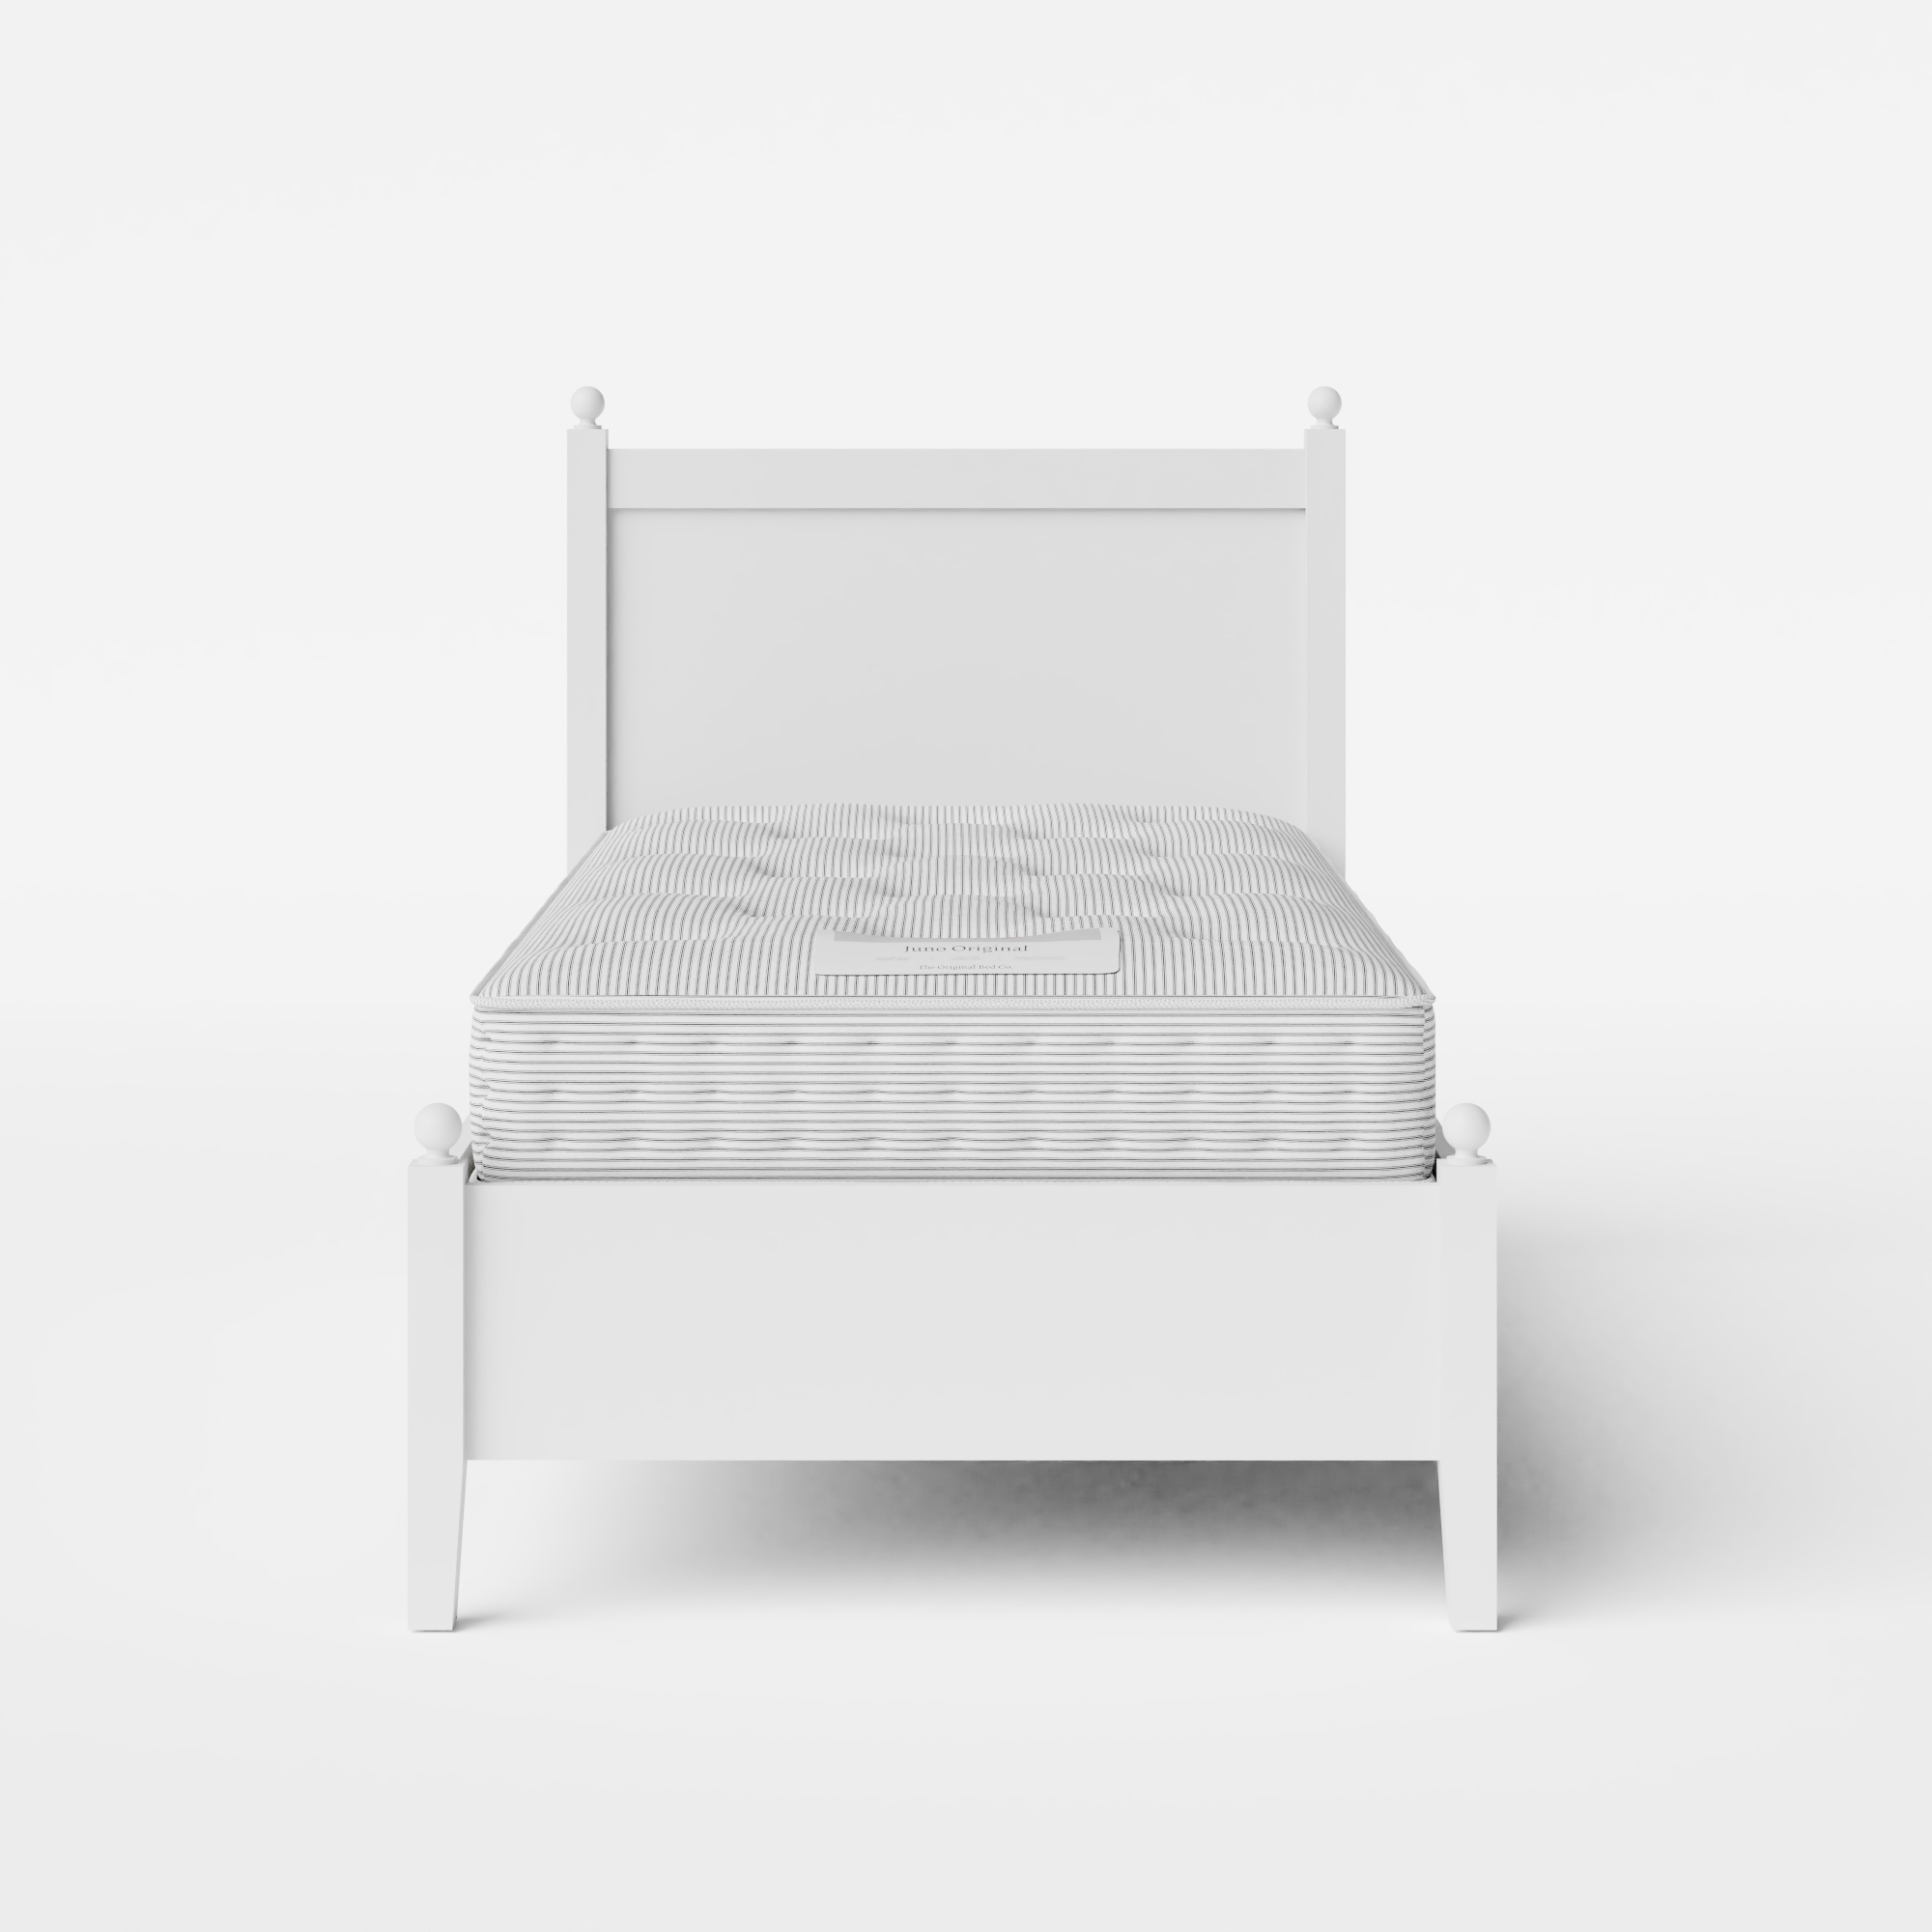 Marbella Low Footend Painted letto singolo in legno bianco con materasso